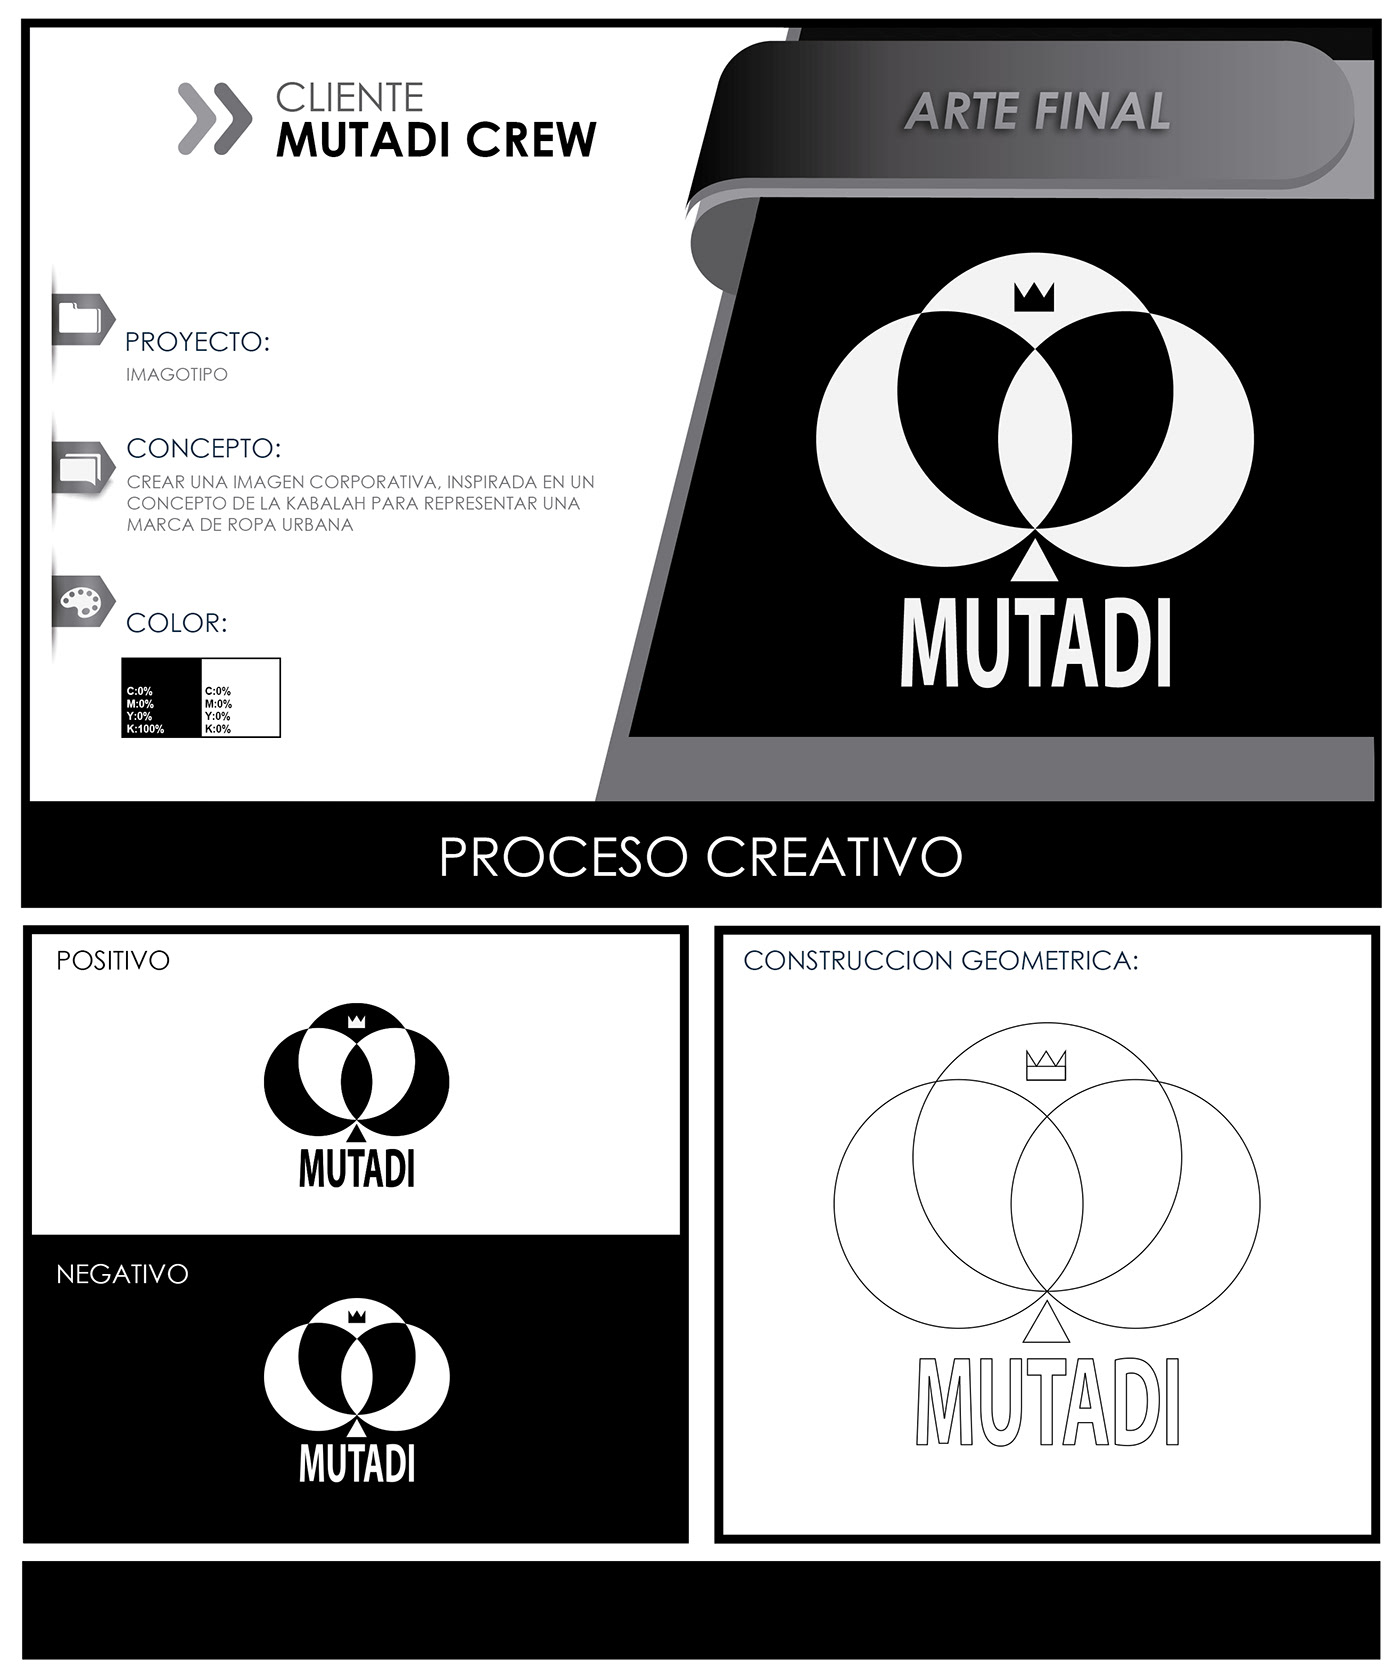 diseñodelogotipo diseñografico imagotipo isologotipo isotipo Logotipo mutadi crew